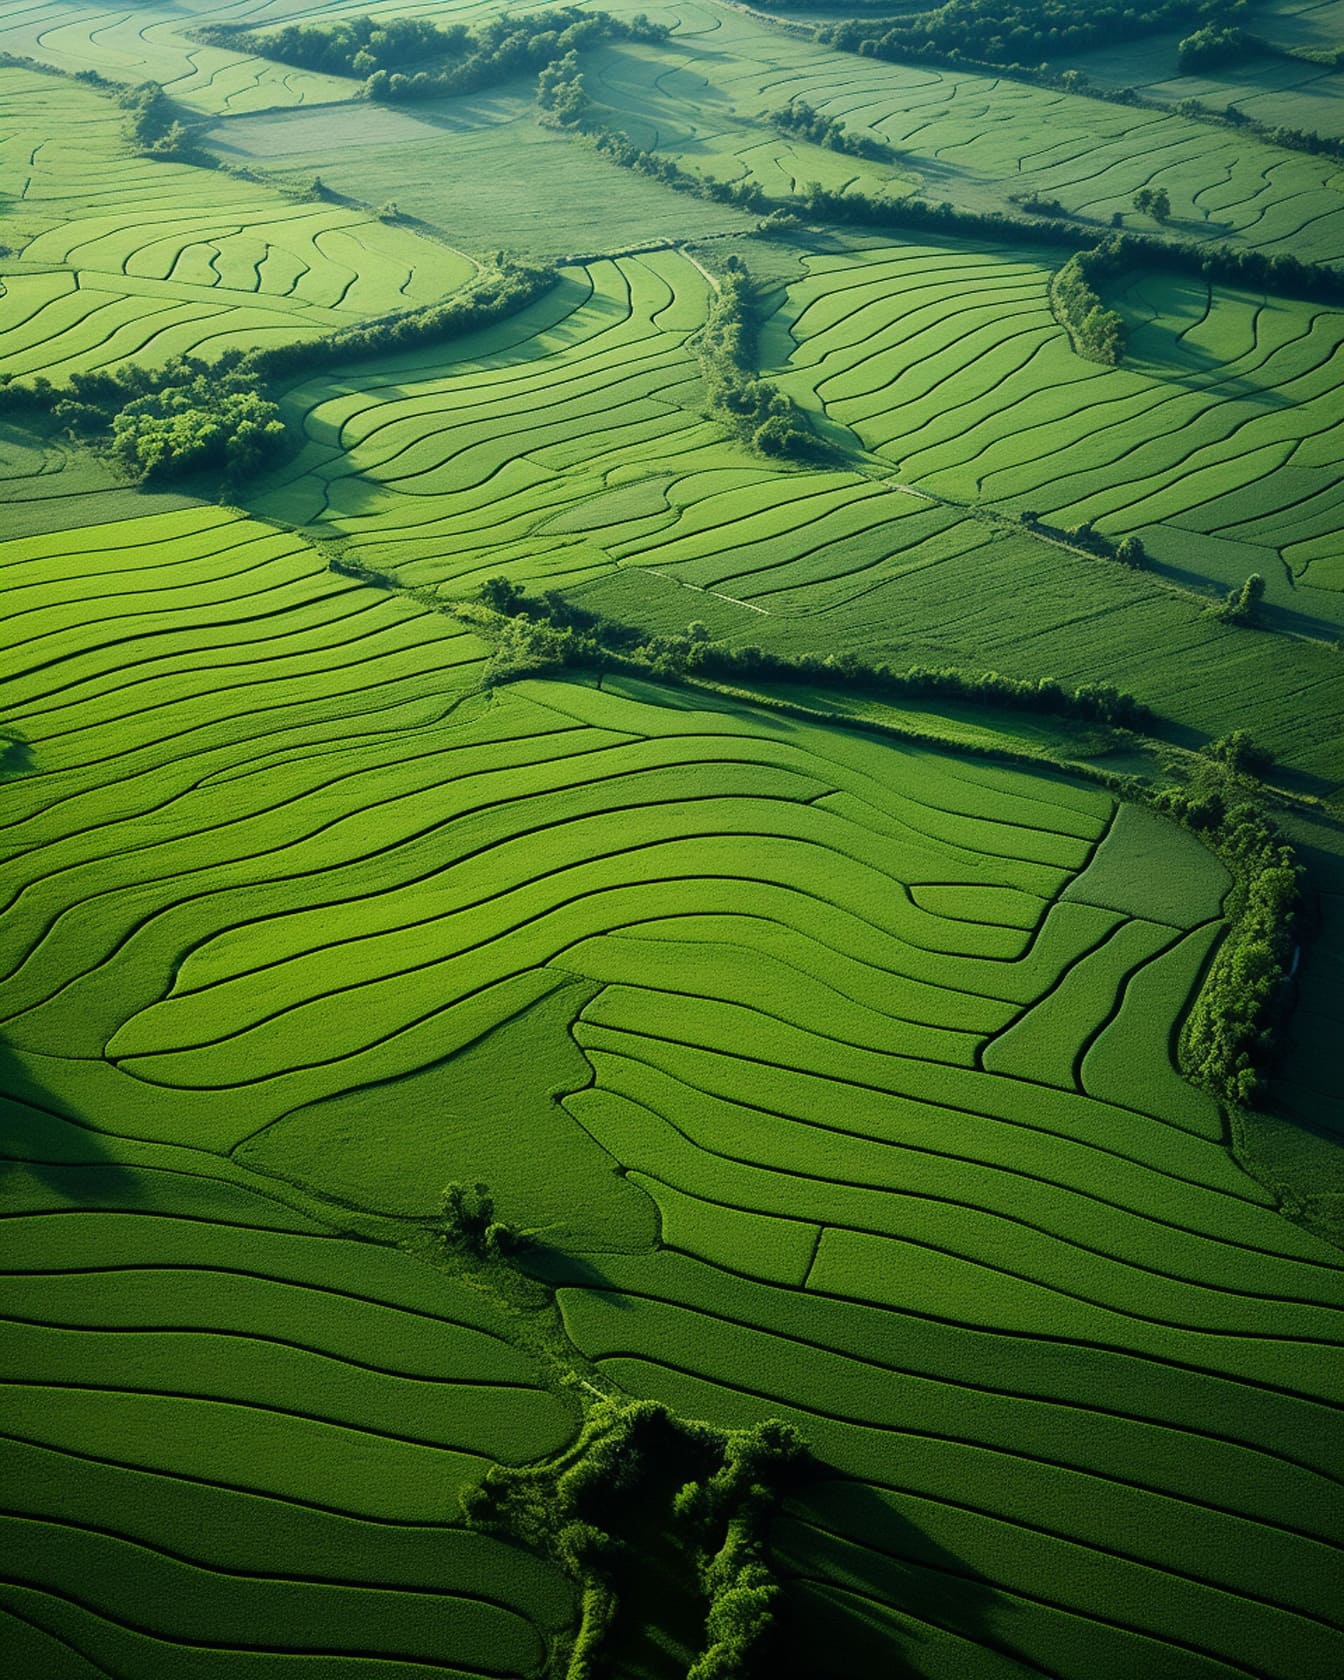 Fotografia aerea dell’illustrazione grafica dei campi agricoli verdi